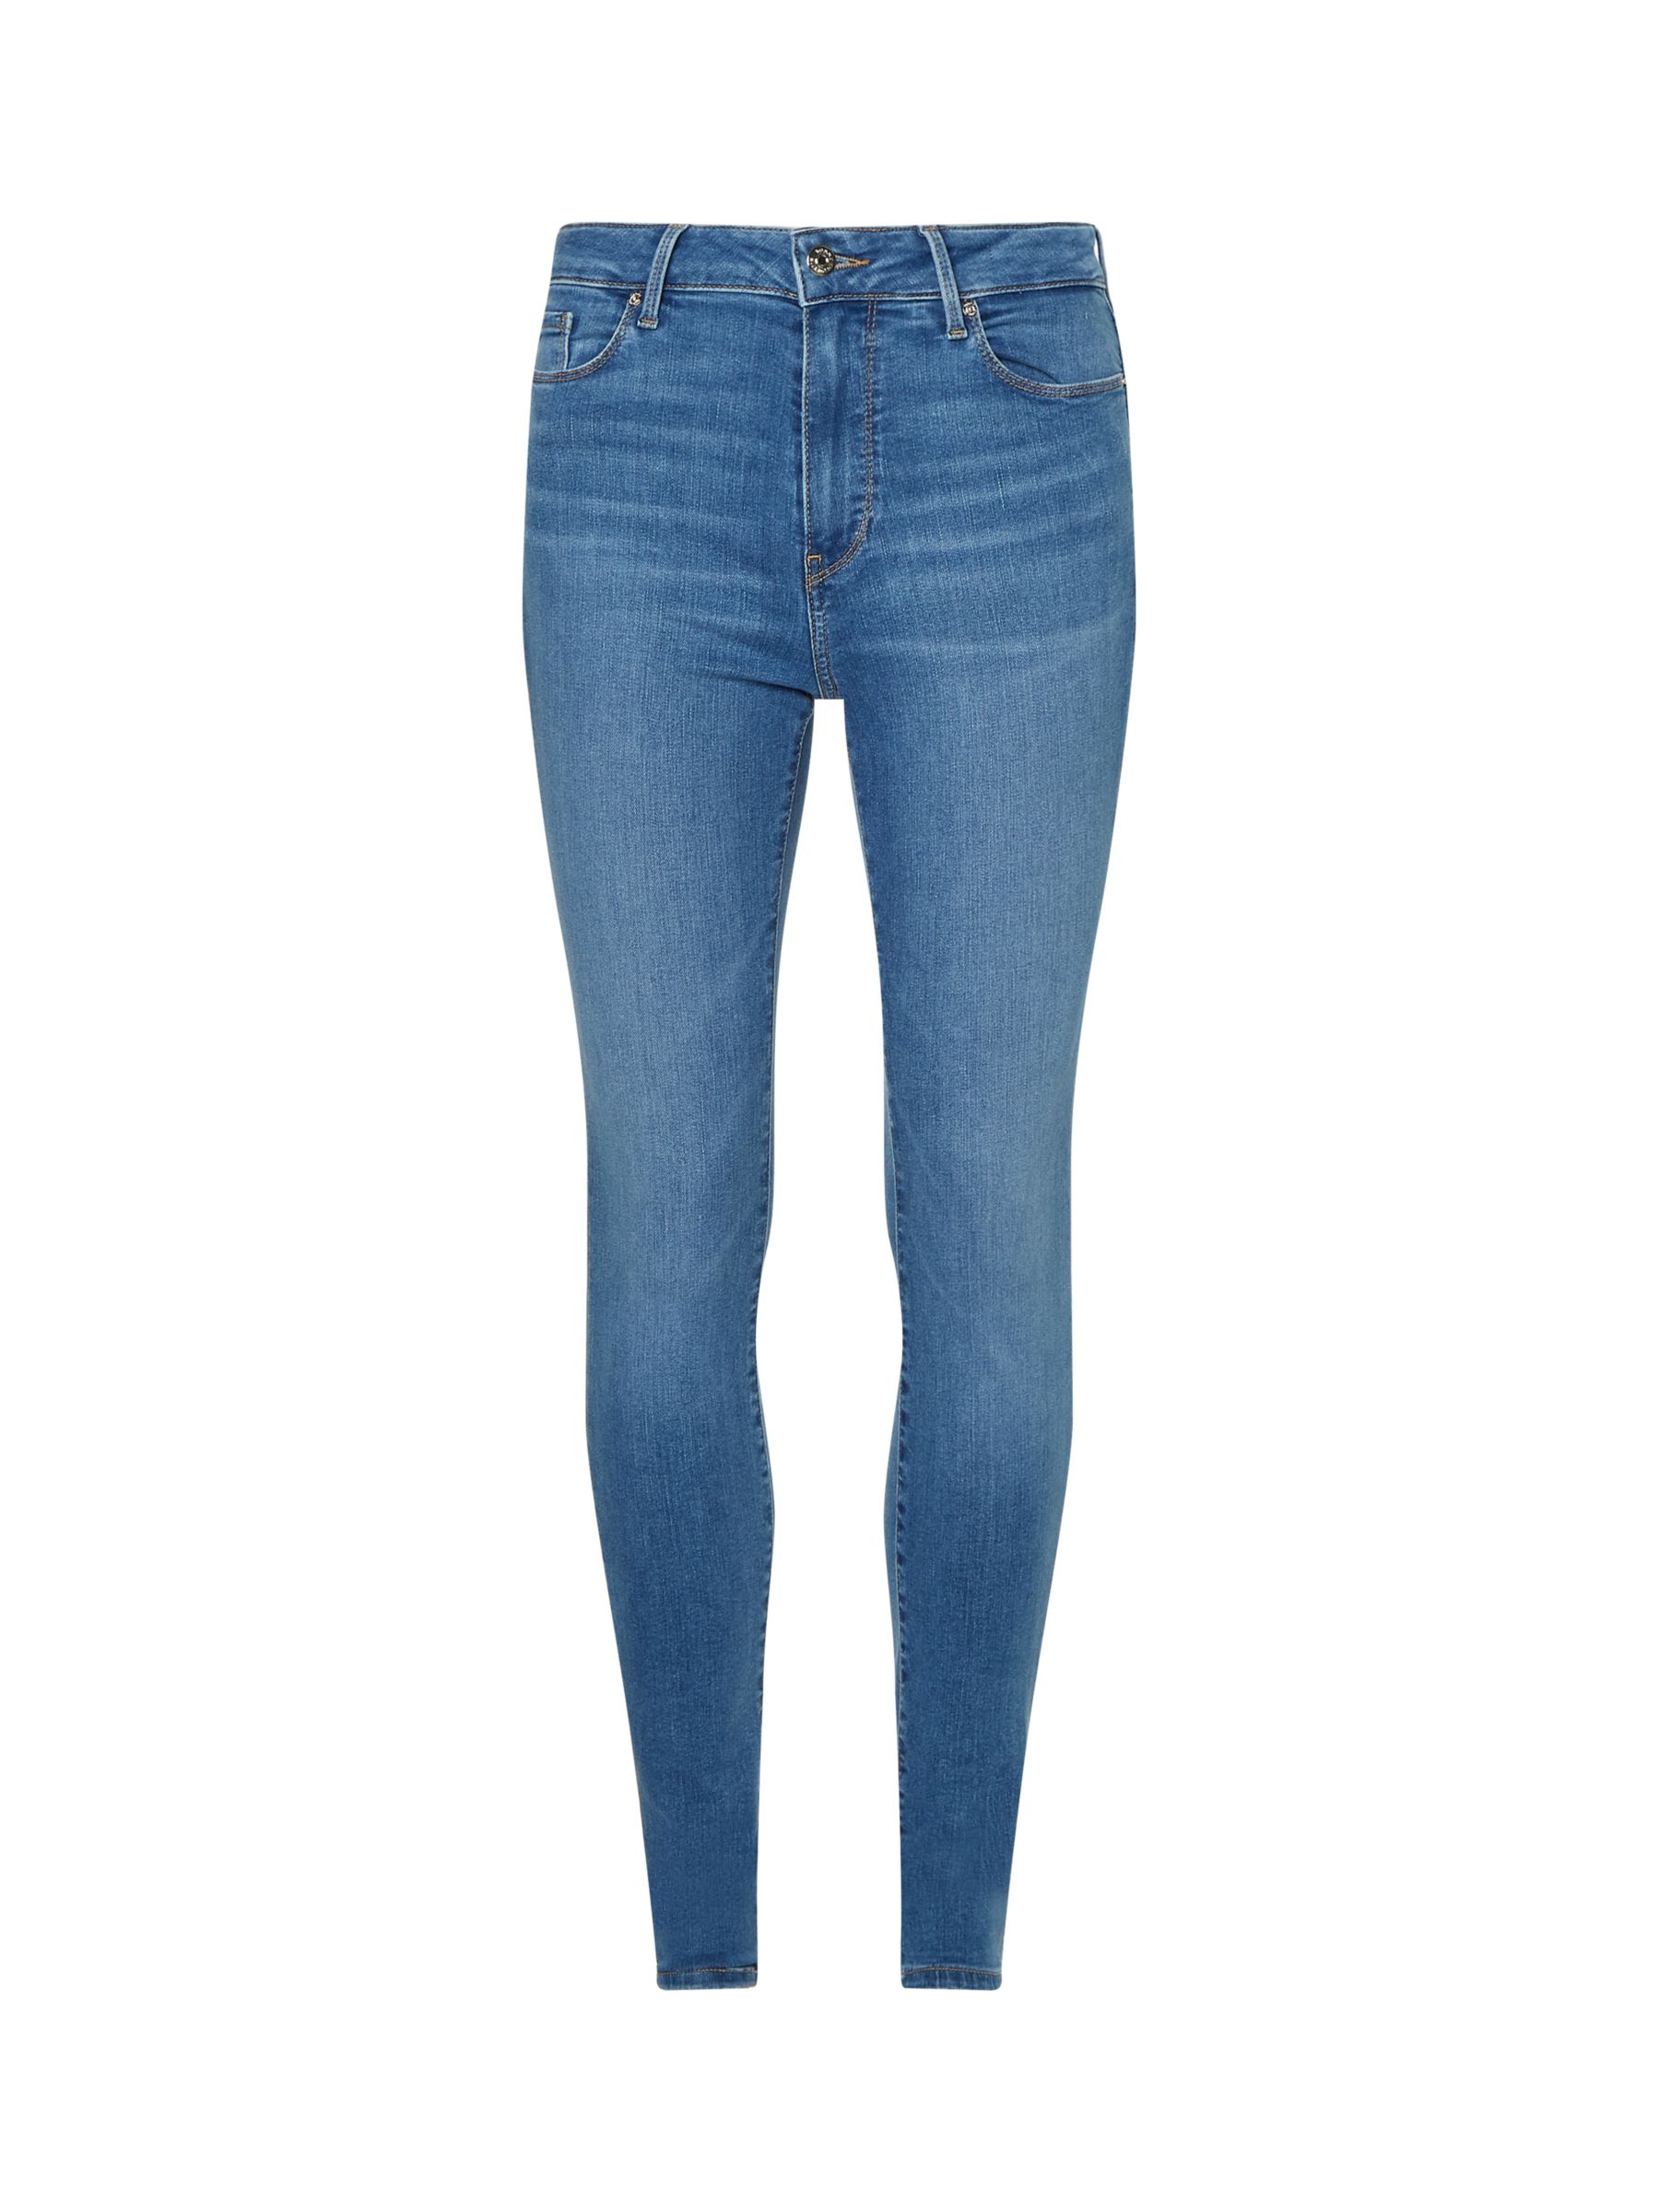 Tommy Hilfiger Harlem Skinny Jeans, Blue at John Lewis & Partners